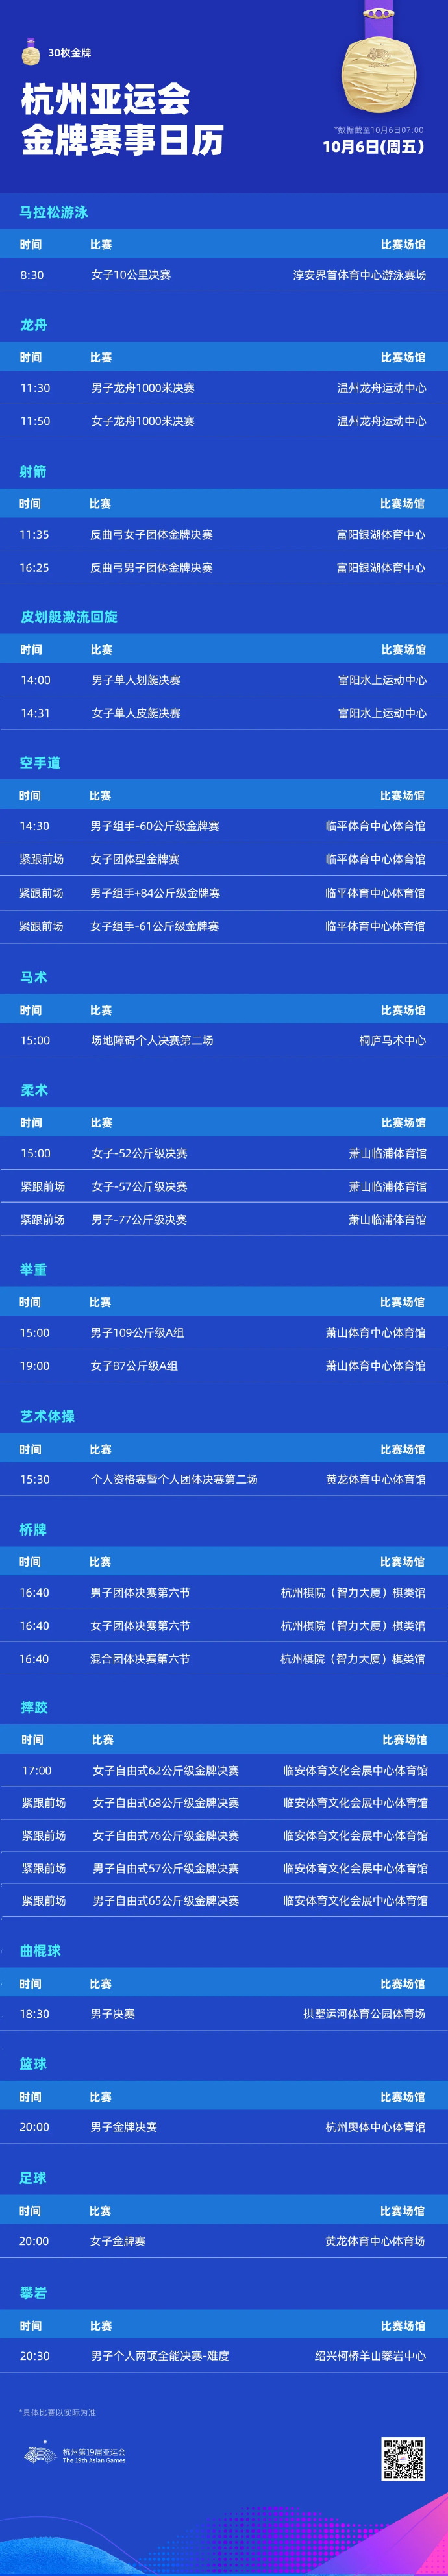 10月6日杭州亚运会赛程直播时间表 今天比赛项目看点介绍